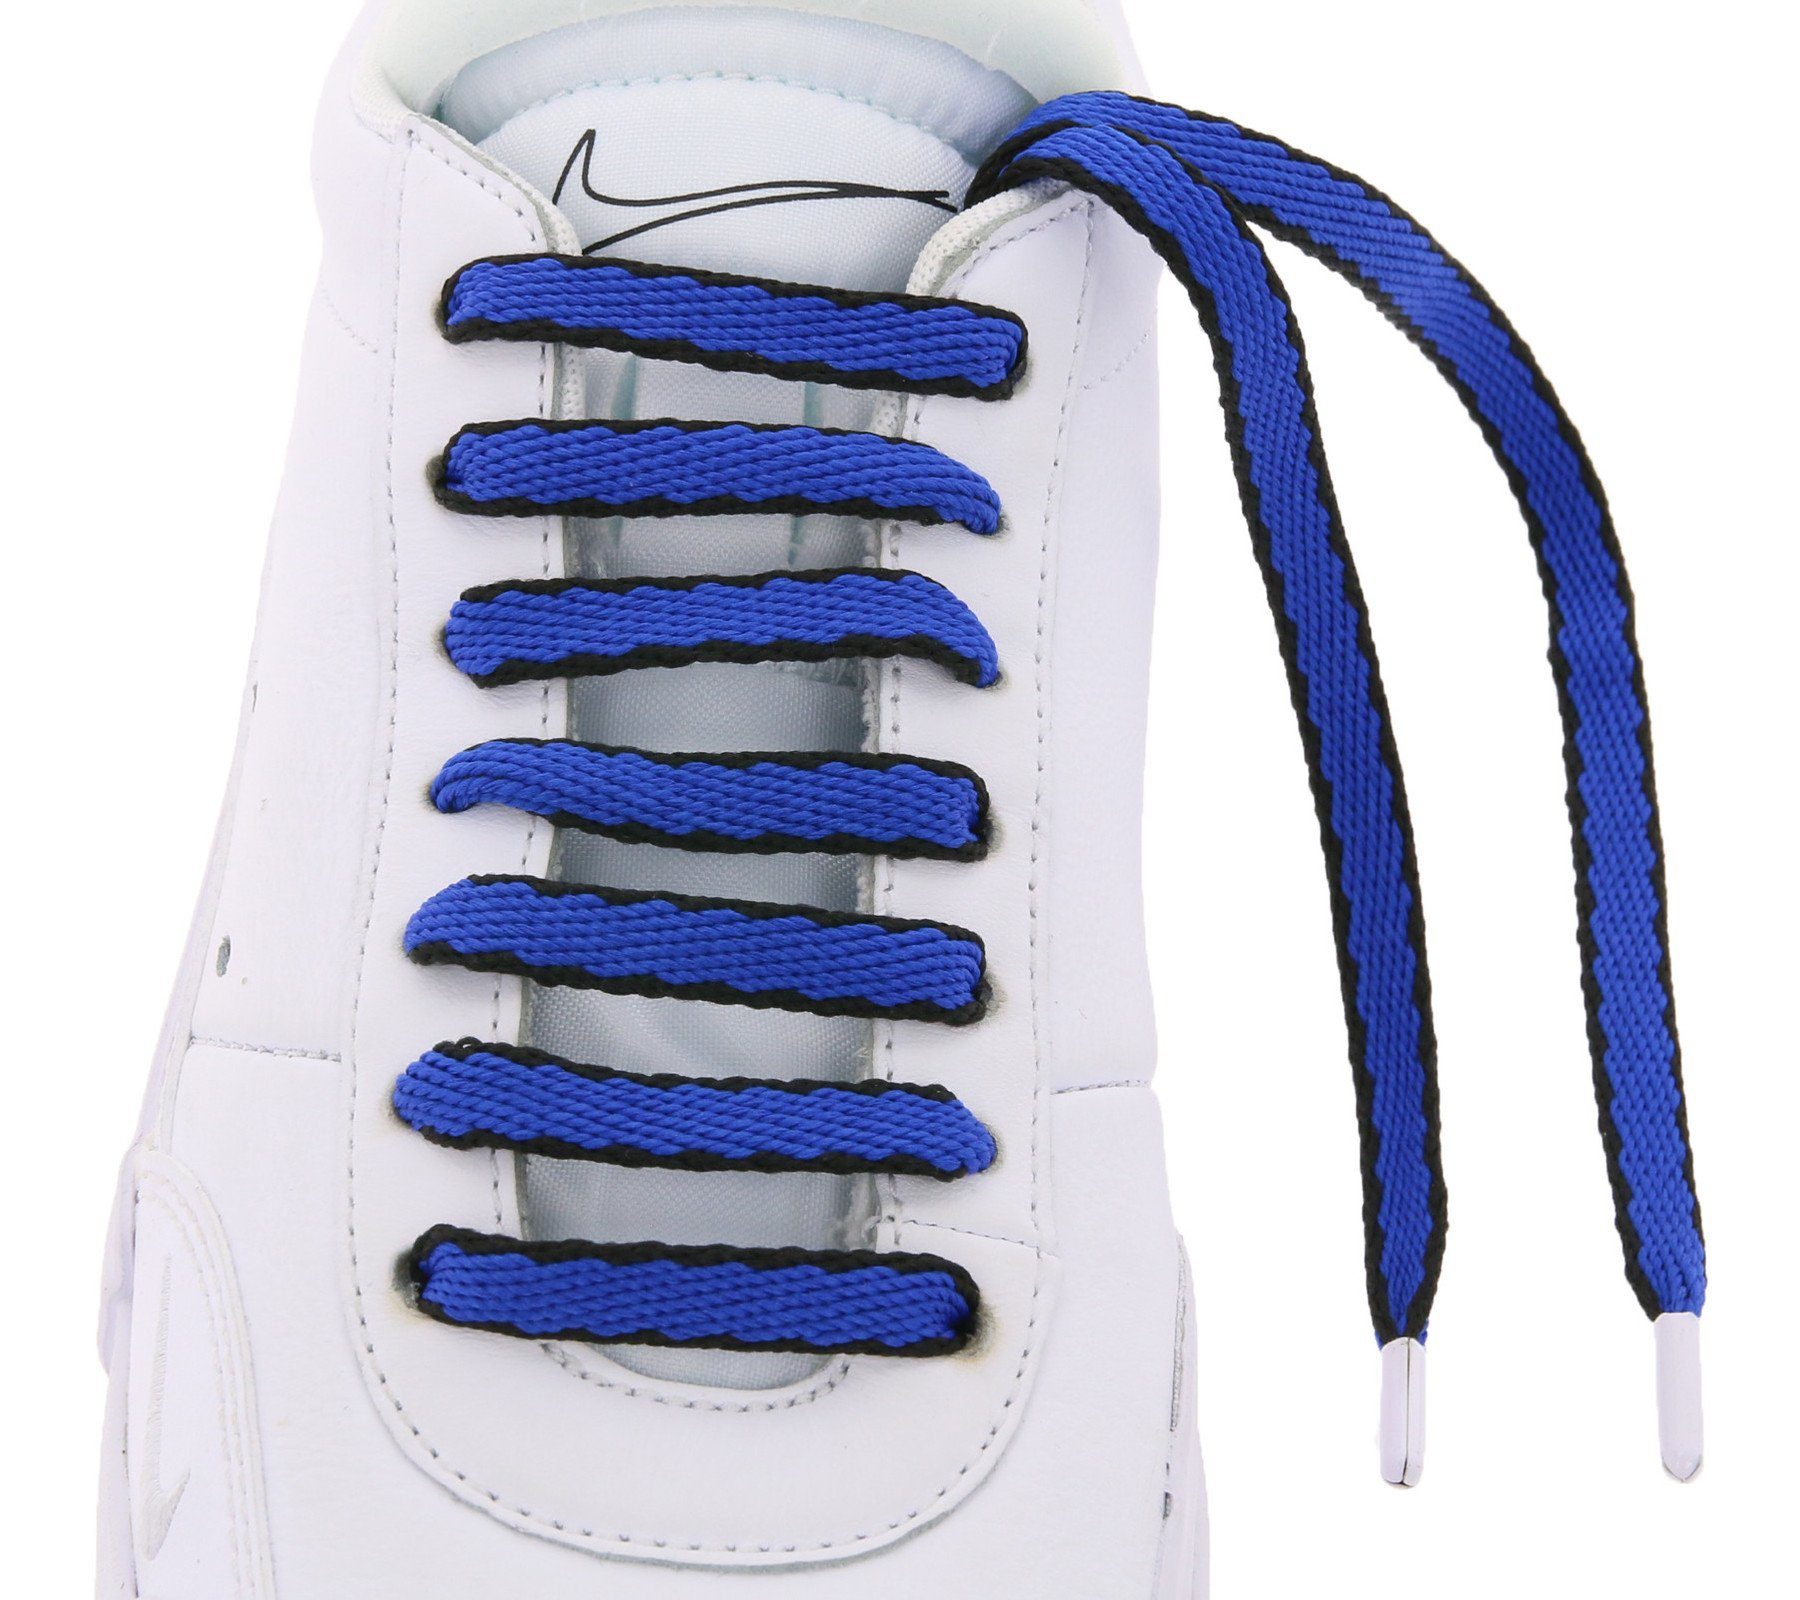 Blau/Schwarz Schnürsenkel Schnürsenkel TubeLaces Royal Schuhbänder Tubelaces Schnürbänder auffällige Schuhe